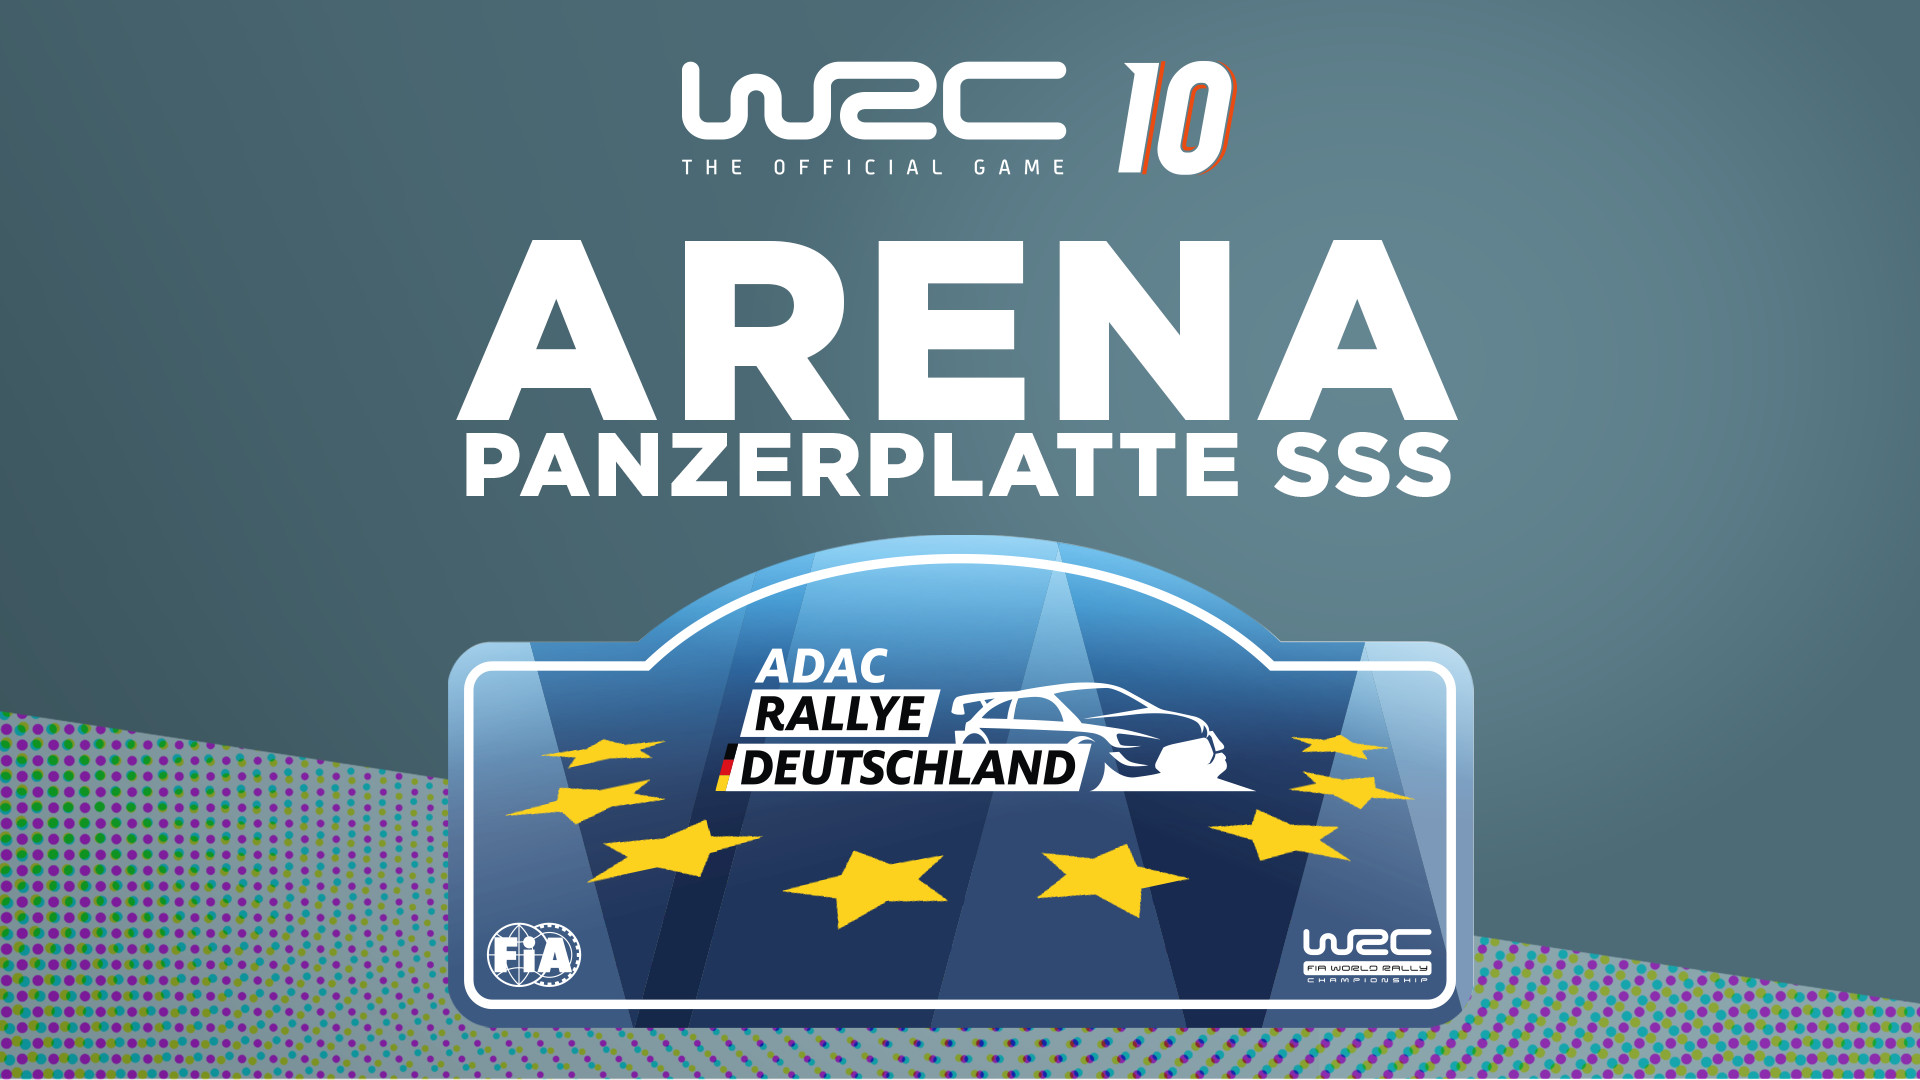 WRC 10 - Arena Panzerplatte SSS DLC Steam CD Key, $4.51